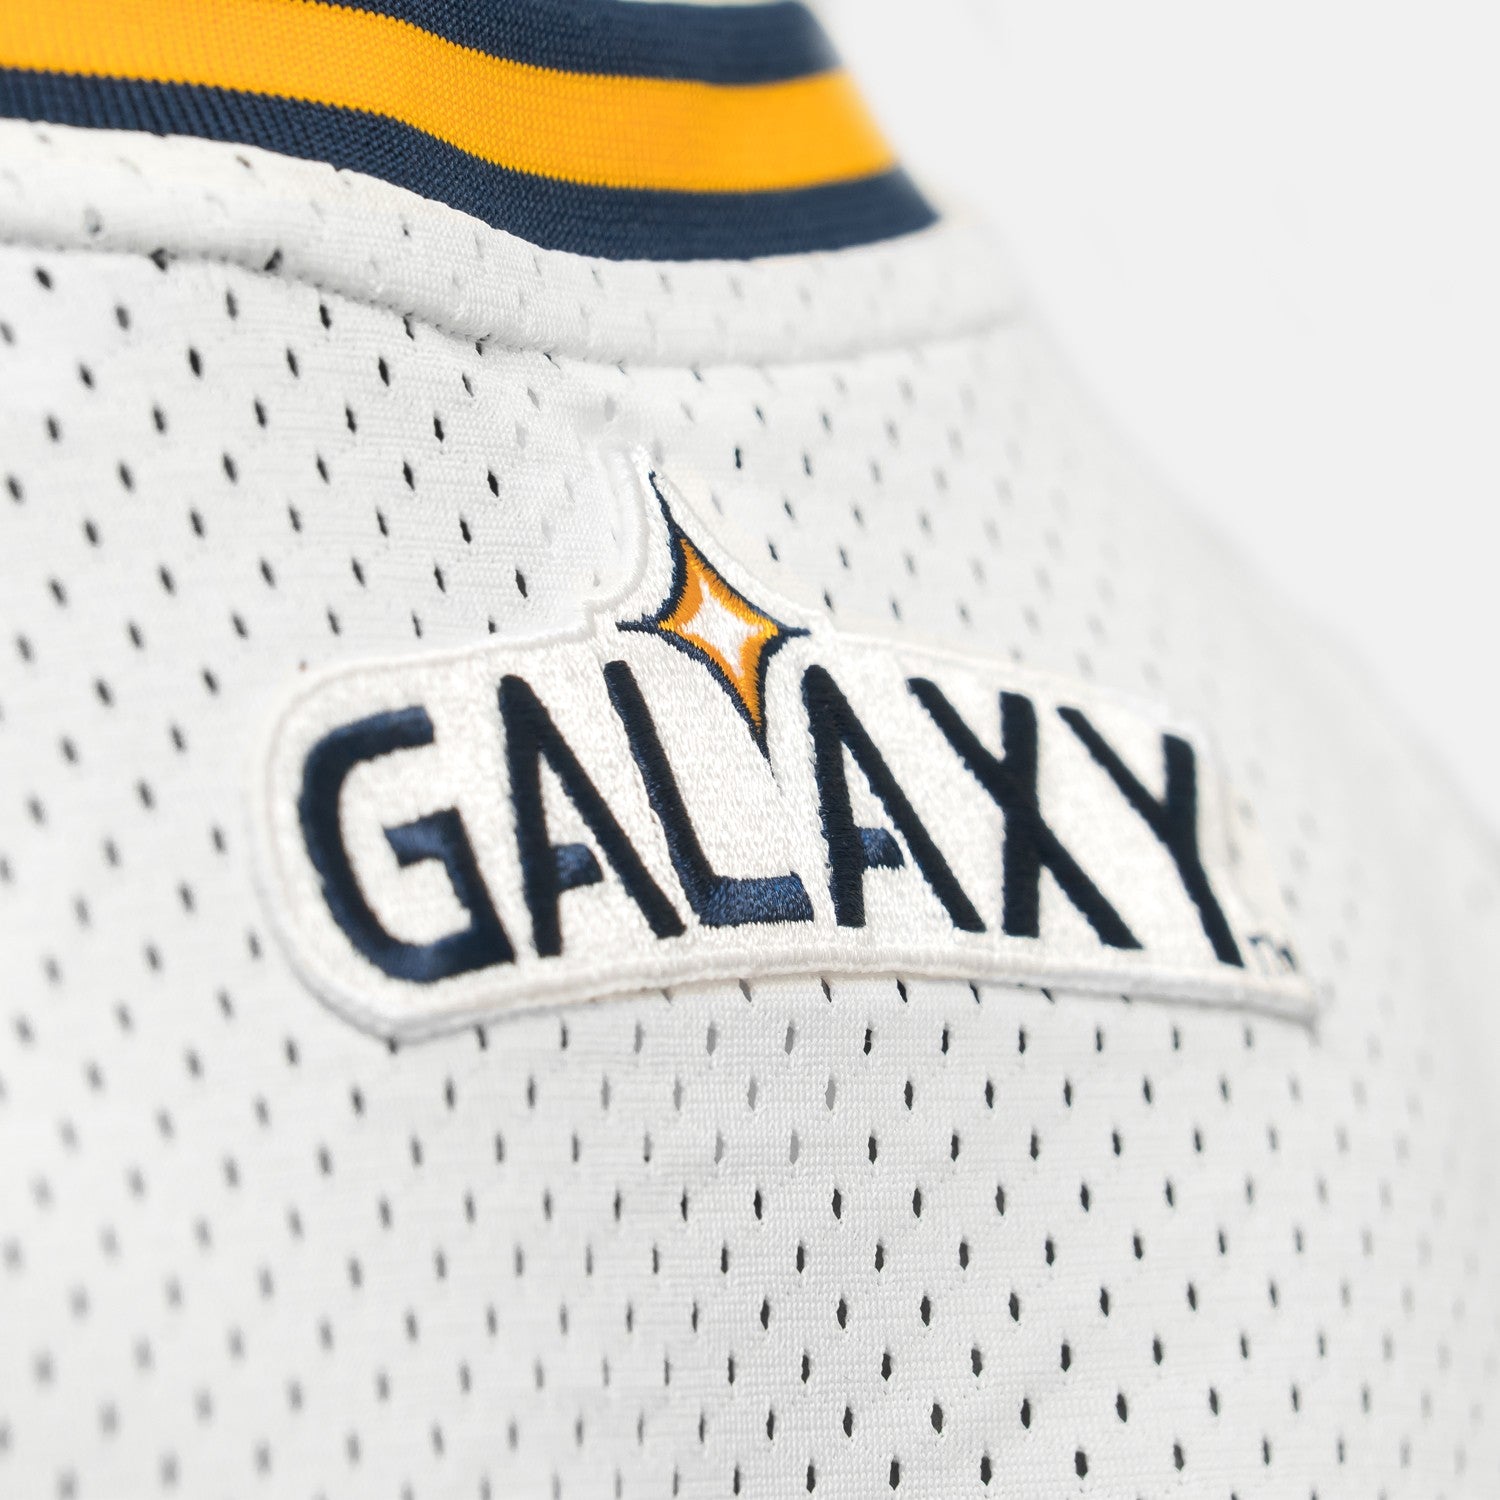 LA Galaxy Basketball Jersey - White/Blue/Yellow